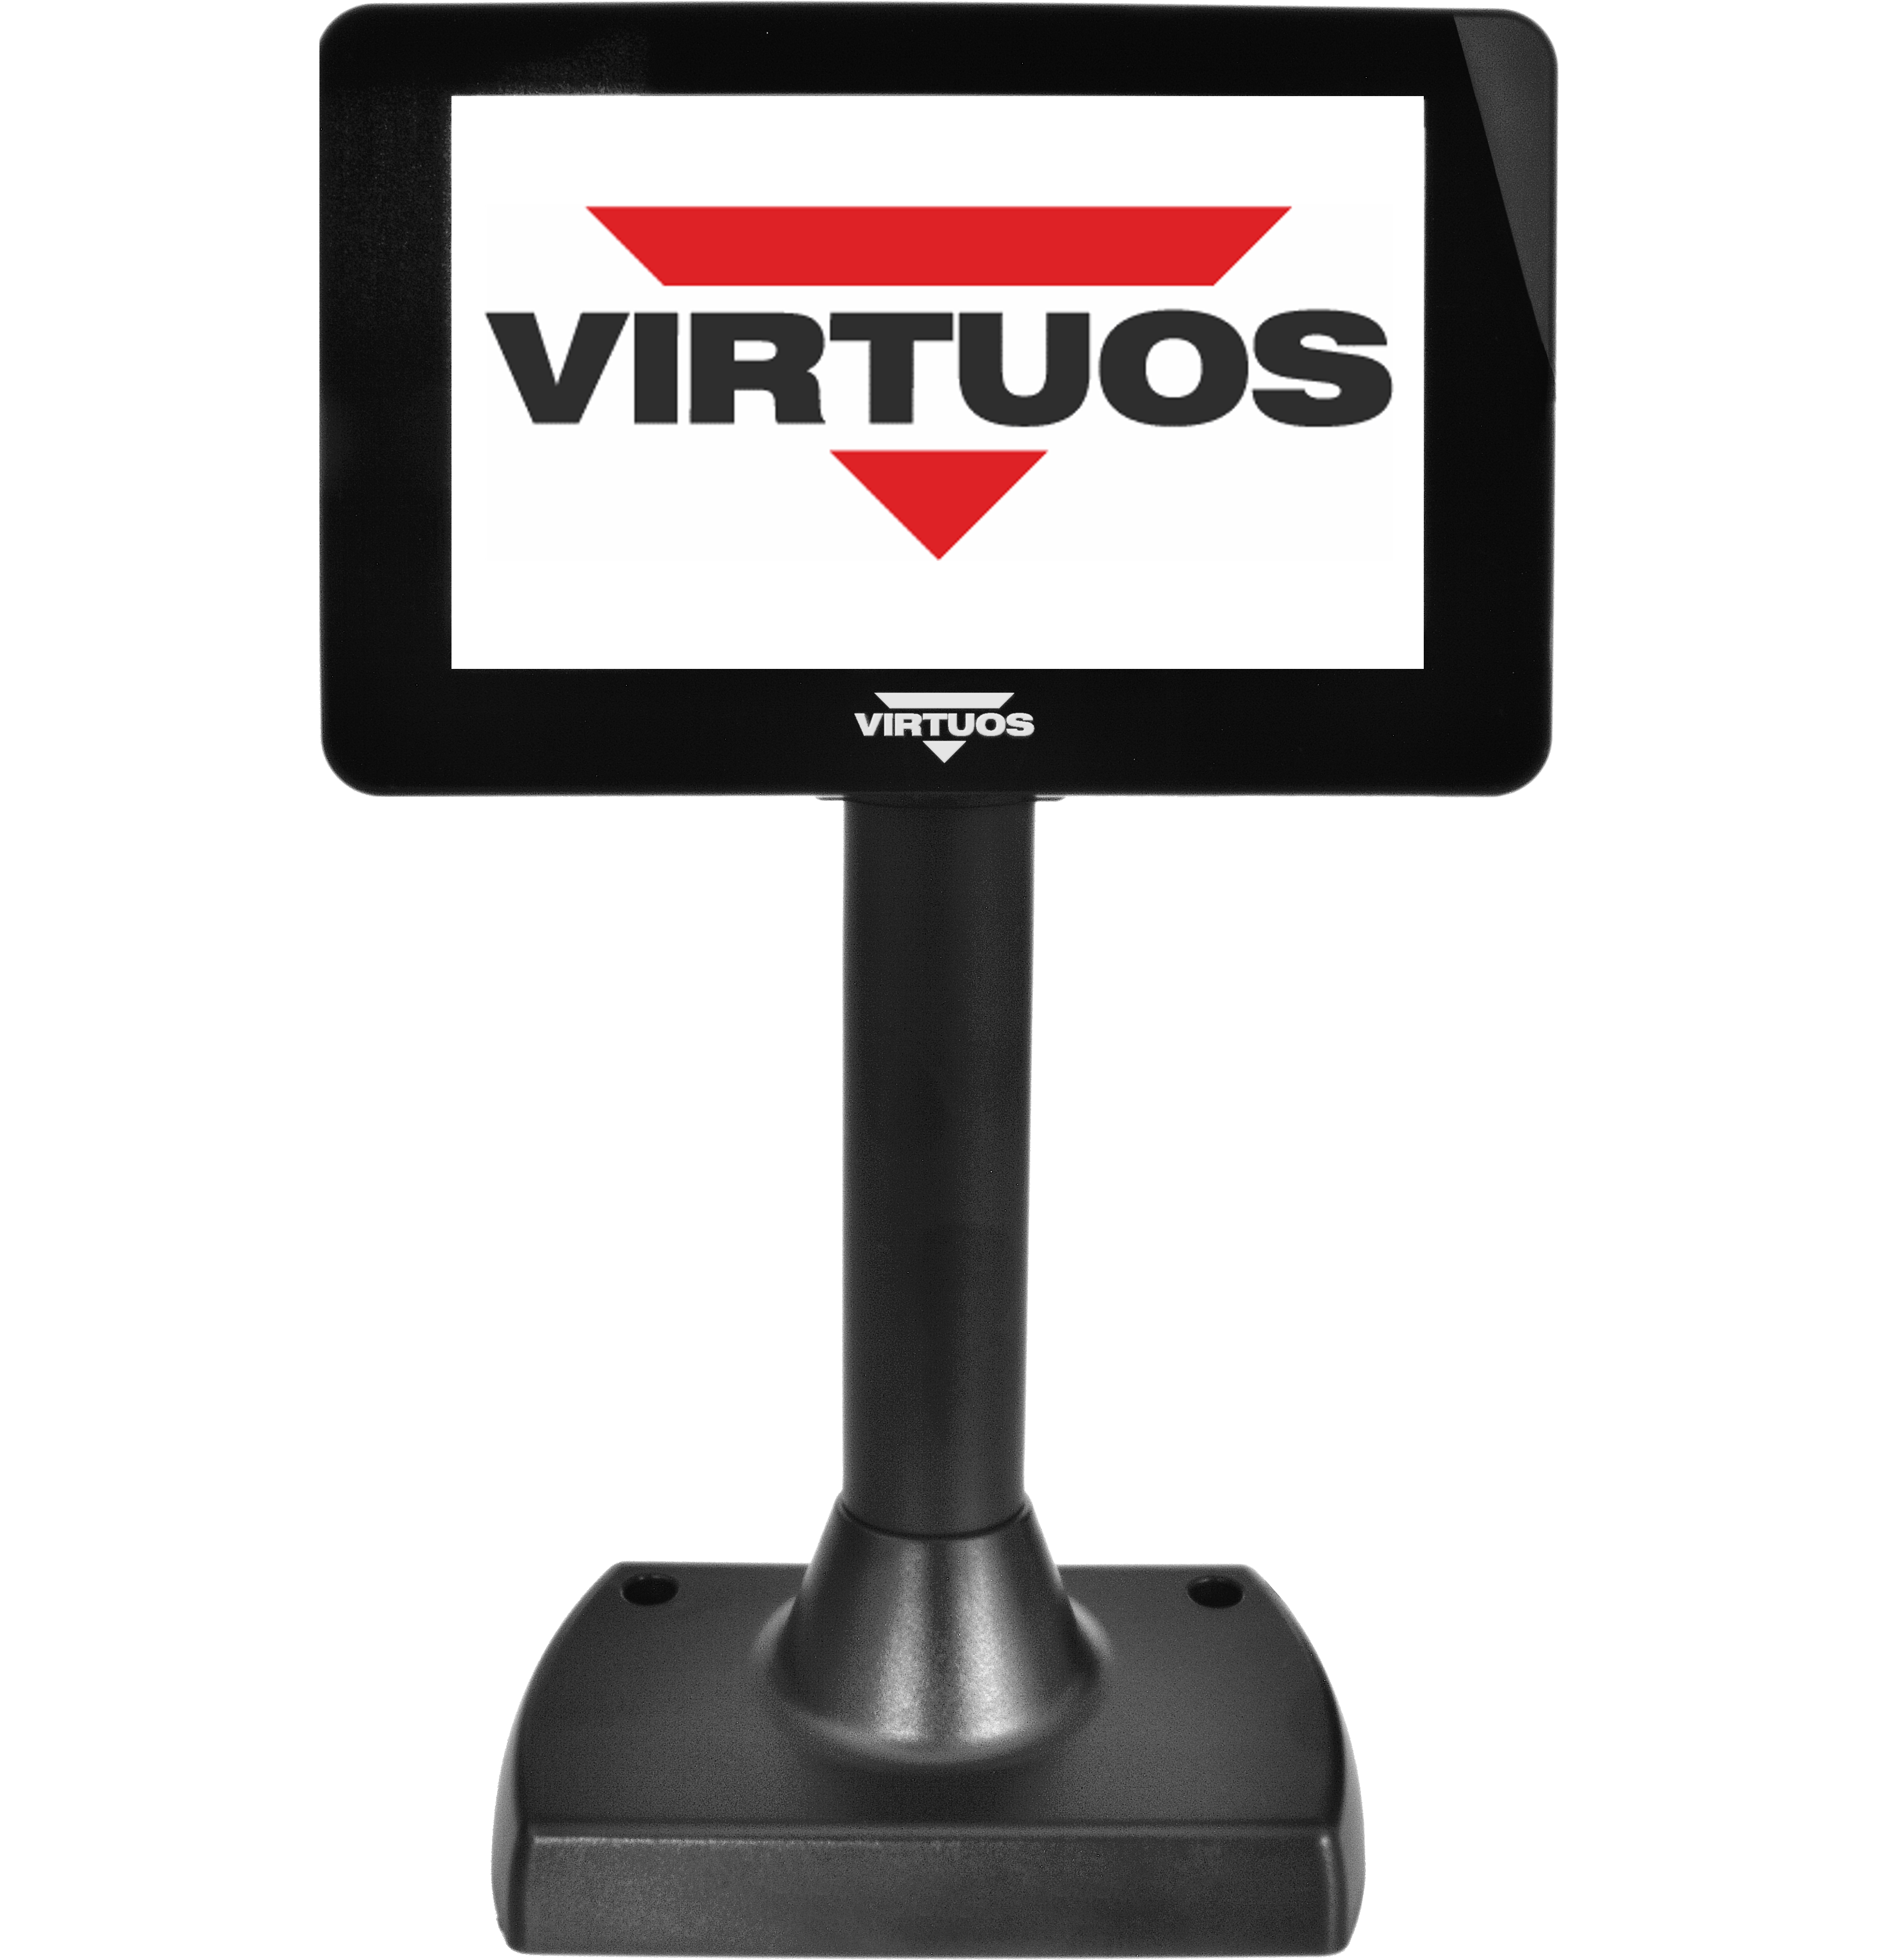 7'' LCD barevný zákaznický displej Virtuos SD700F, USB, černý